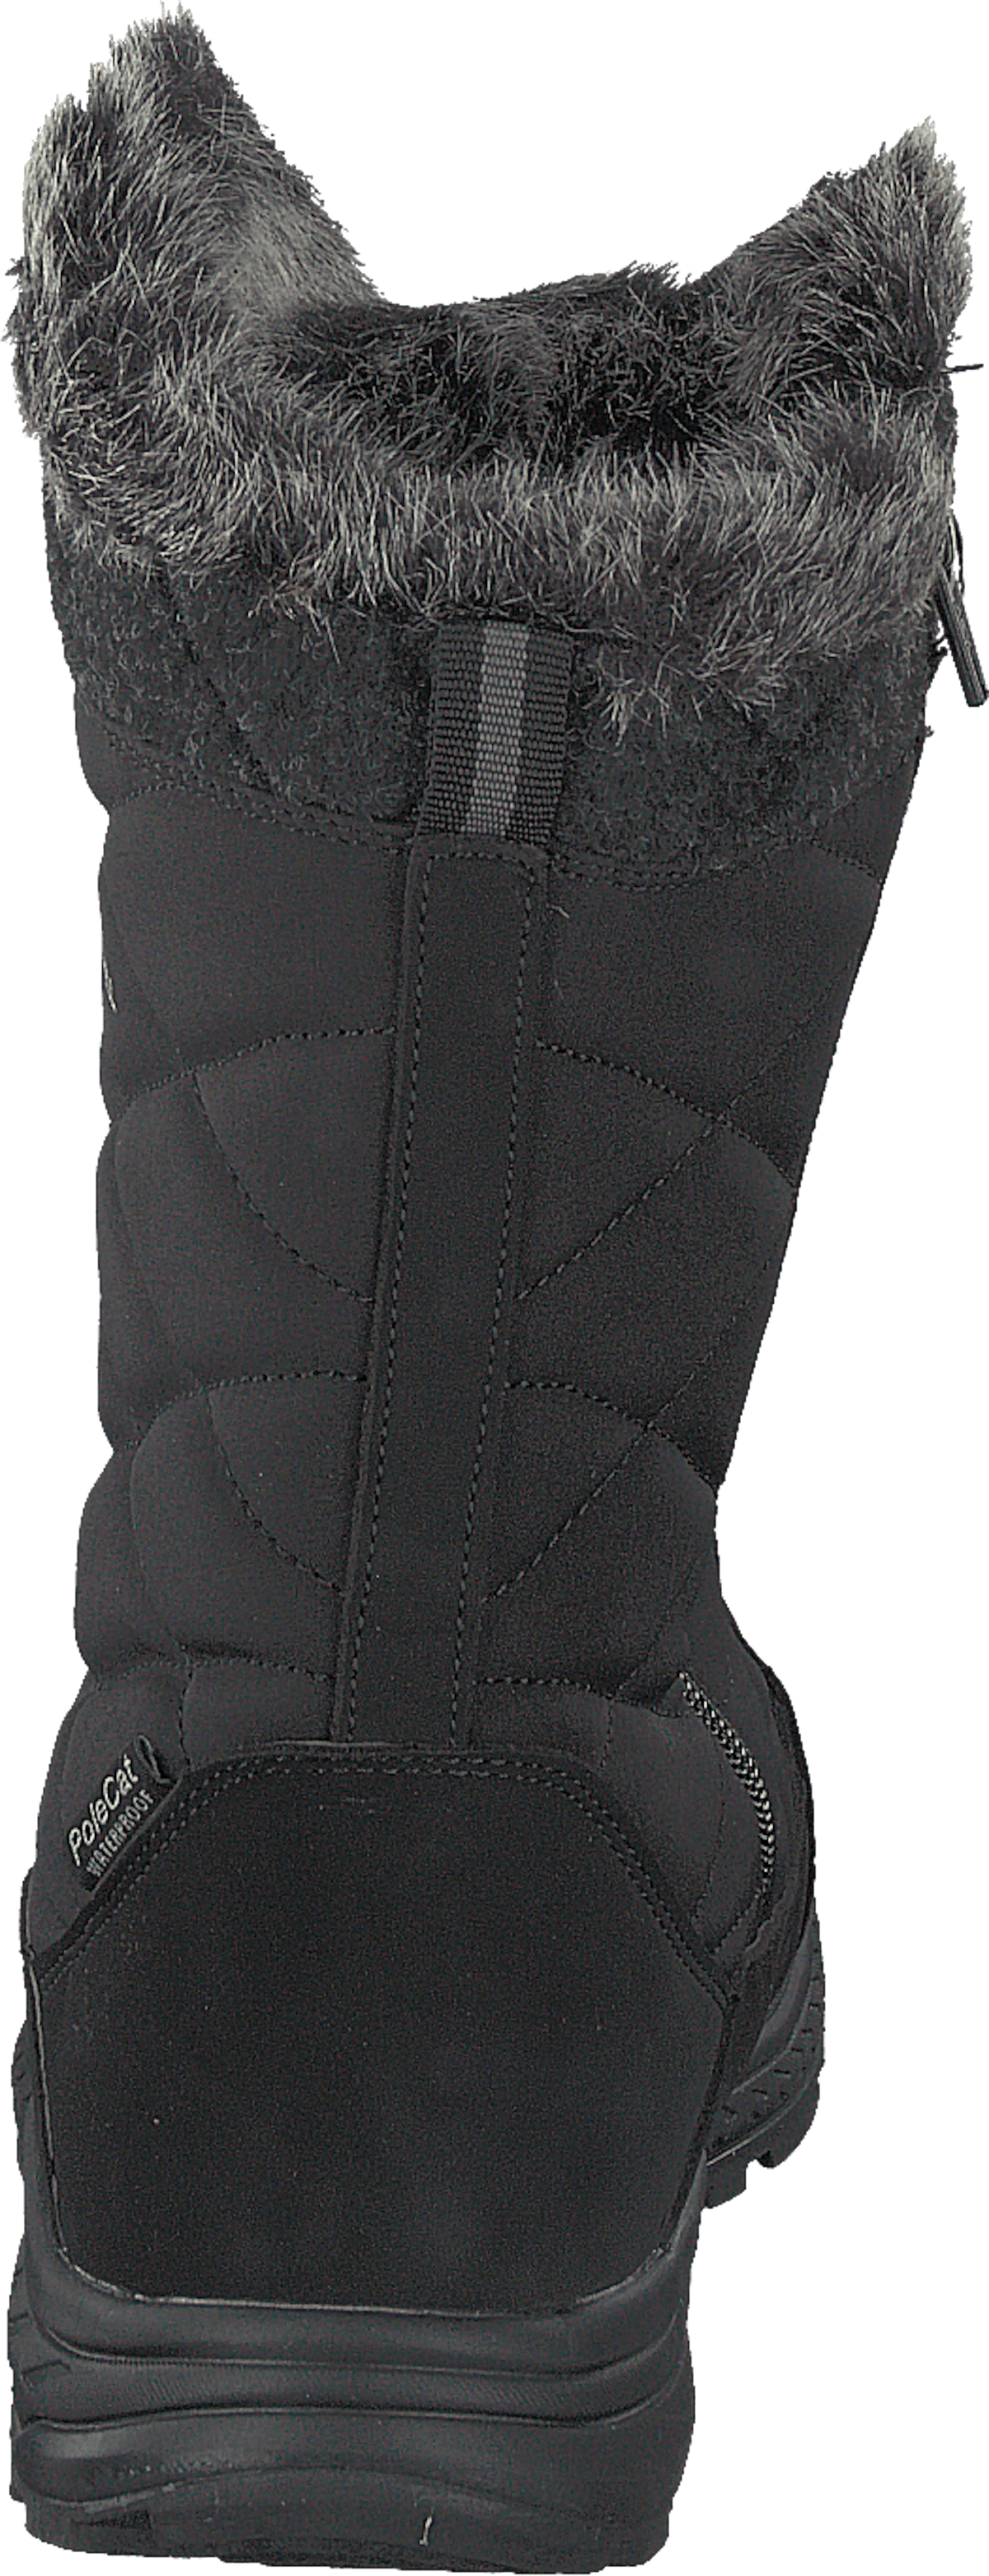 430-9804 Waterproof Warm Lined Black